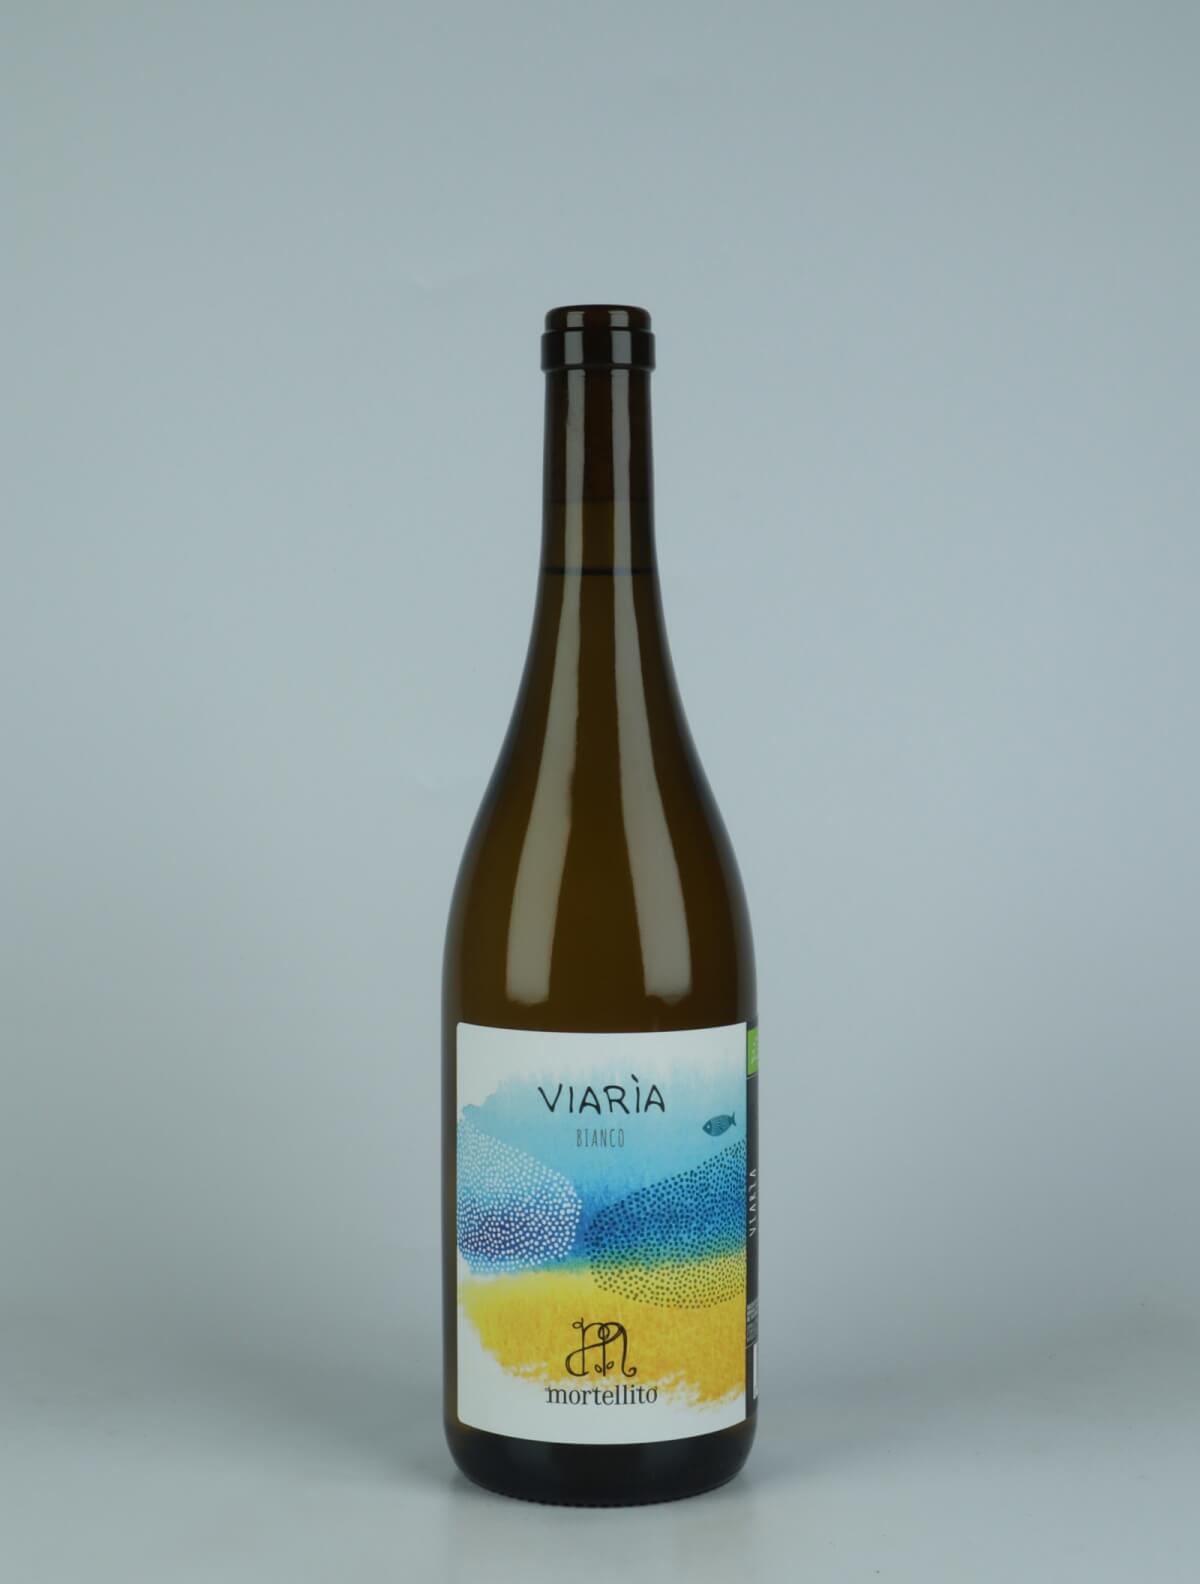 A bottle 2023 Viaria White wine from Il Mortellito, Sicily in Italy